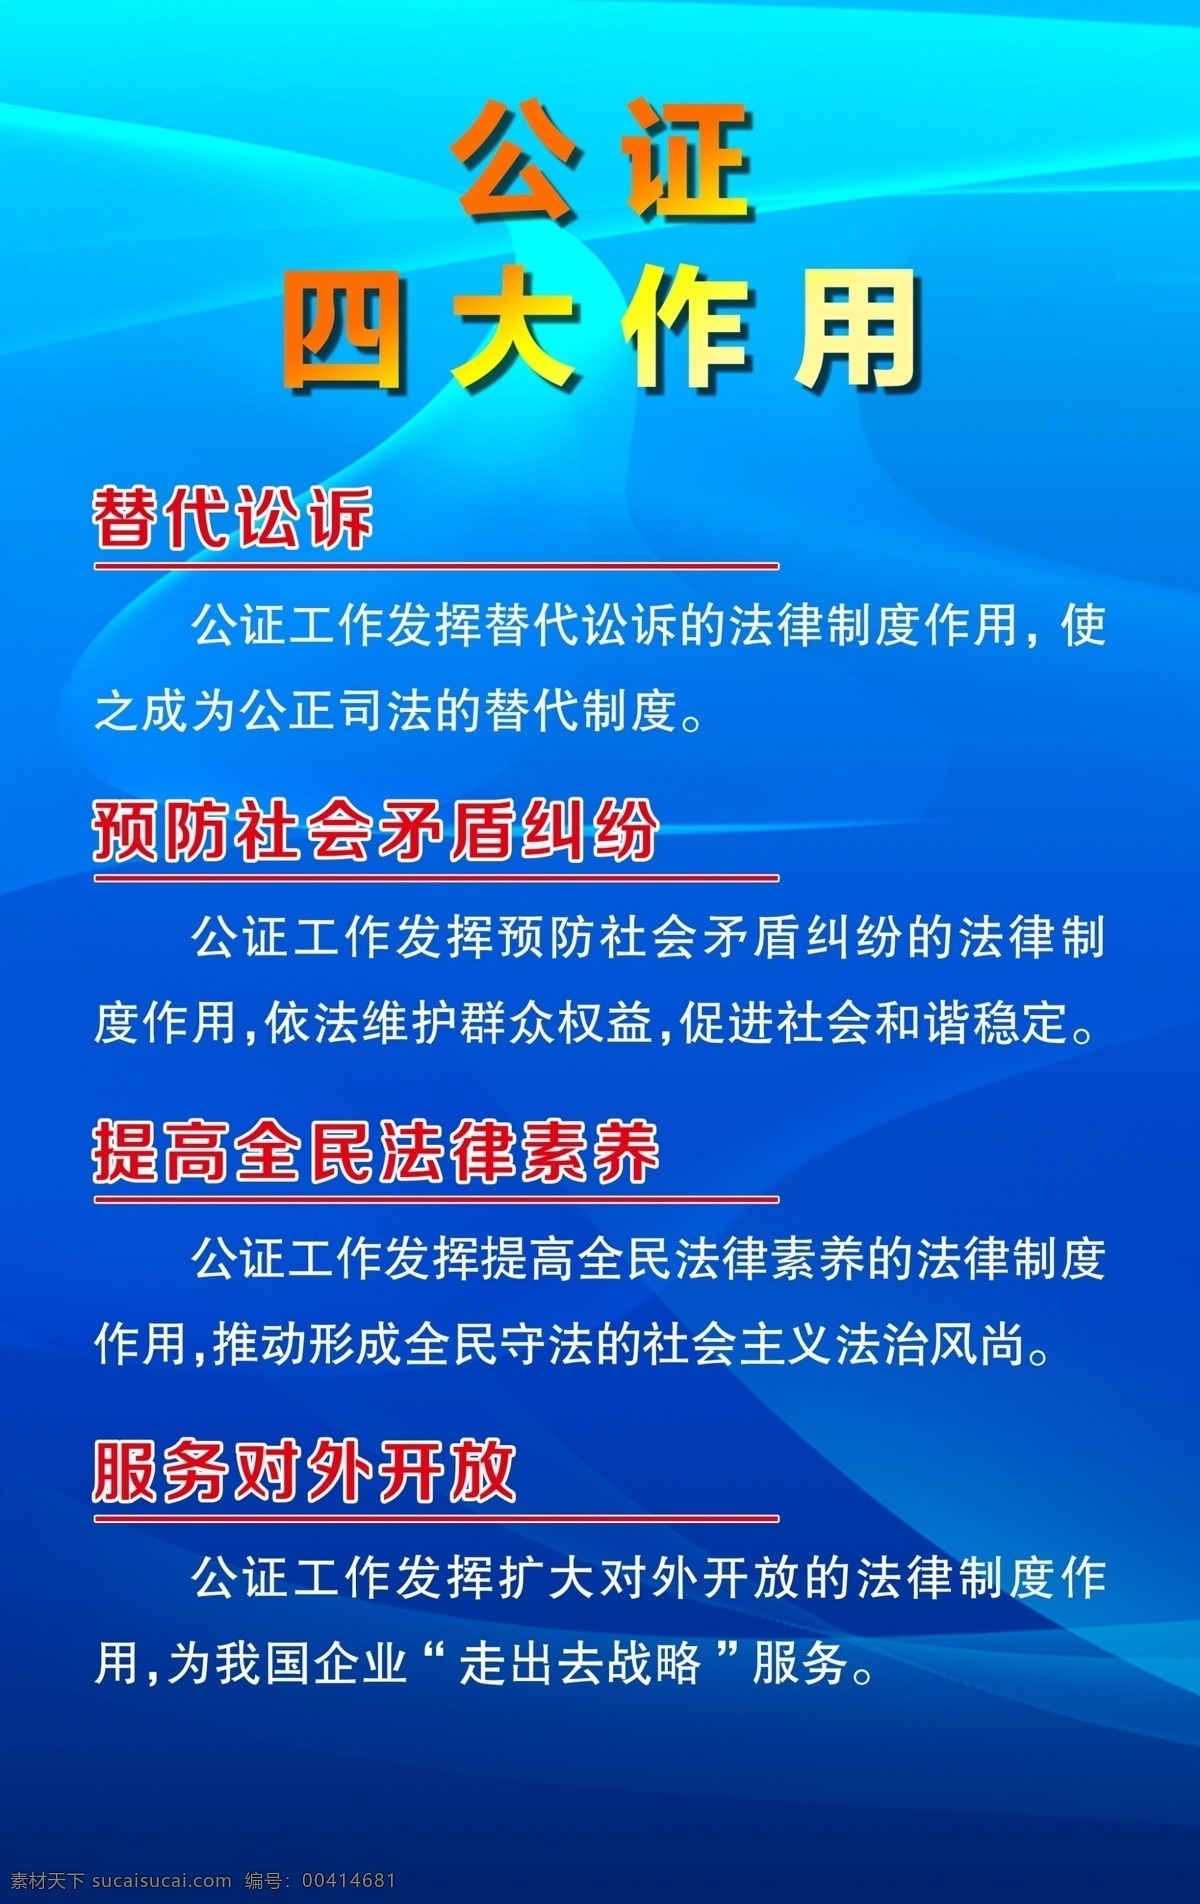 公证制度 公证 中国公证 logo 科室牌 门派 蓝色 红色 白色 制度